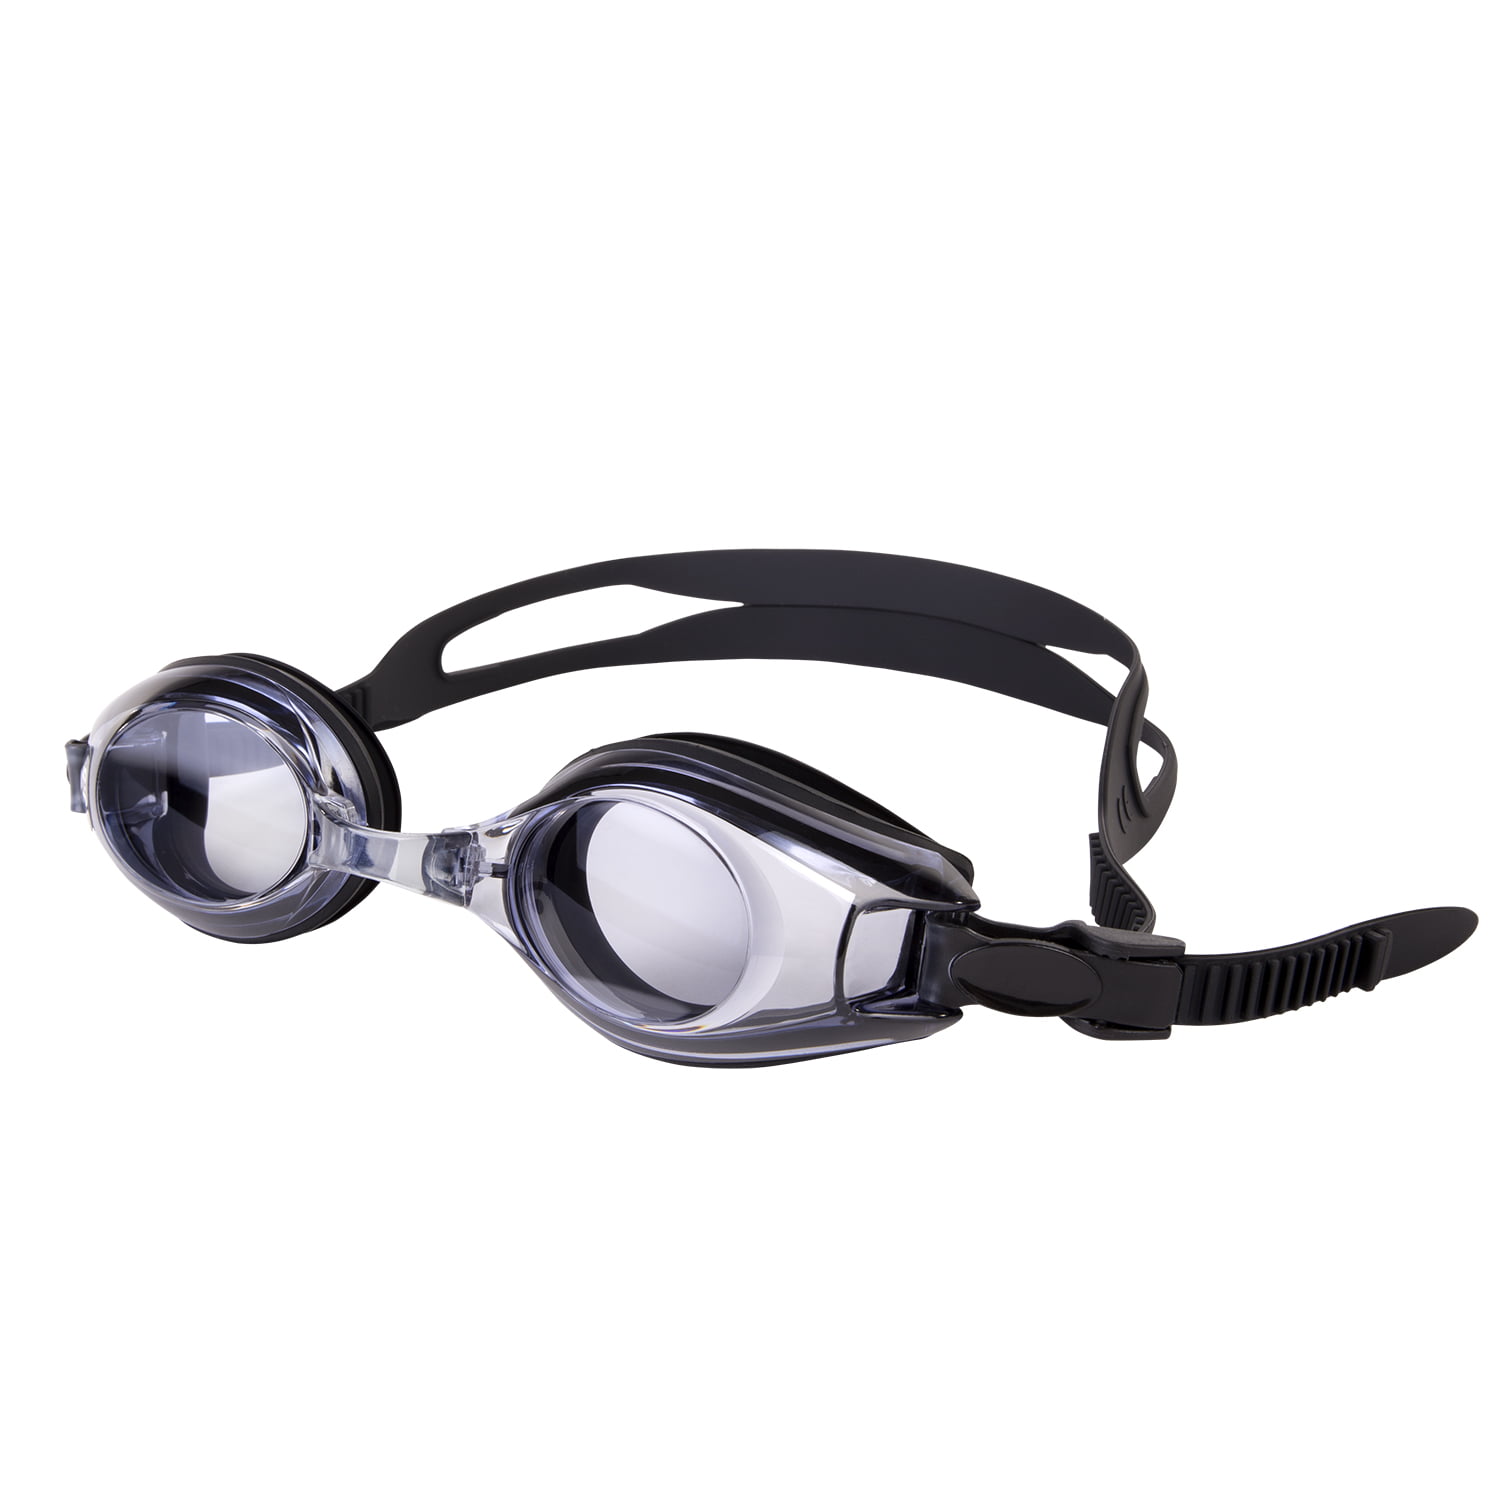 IST RX Prescription Swim Goggles for Adults 